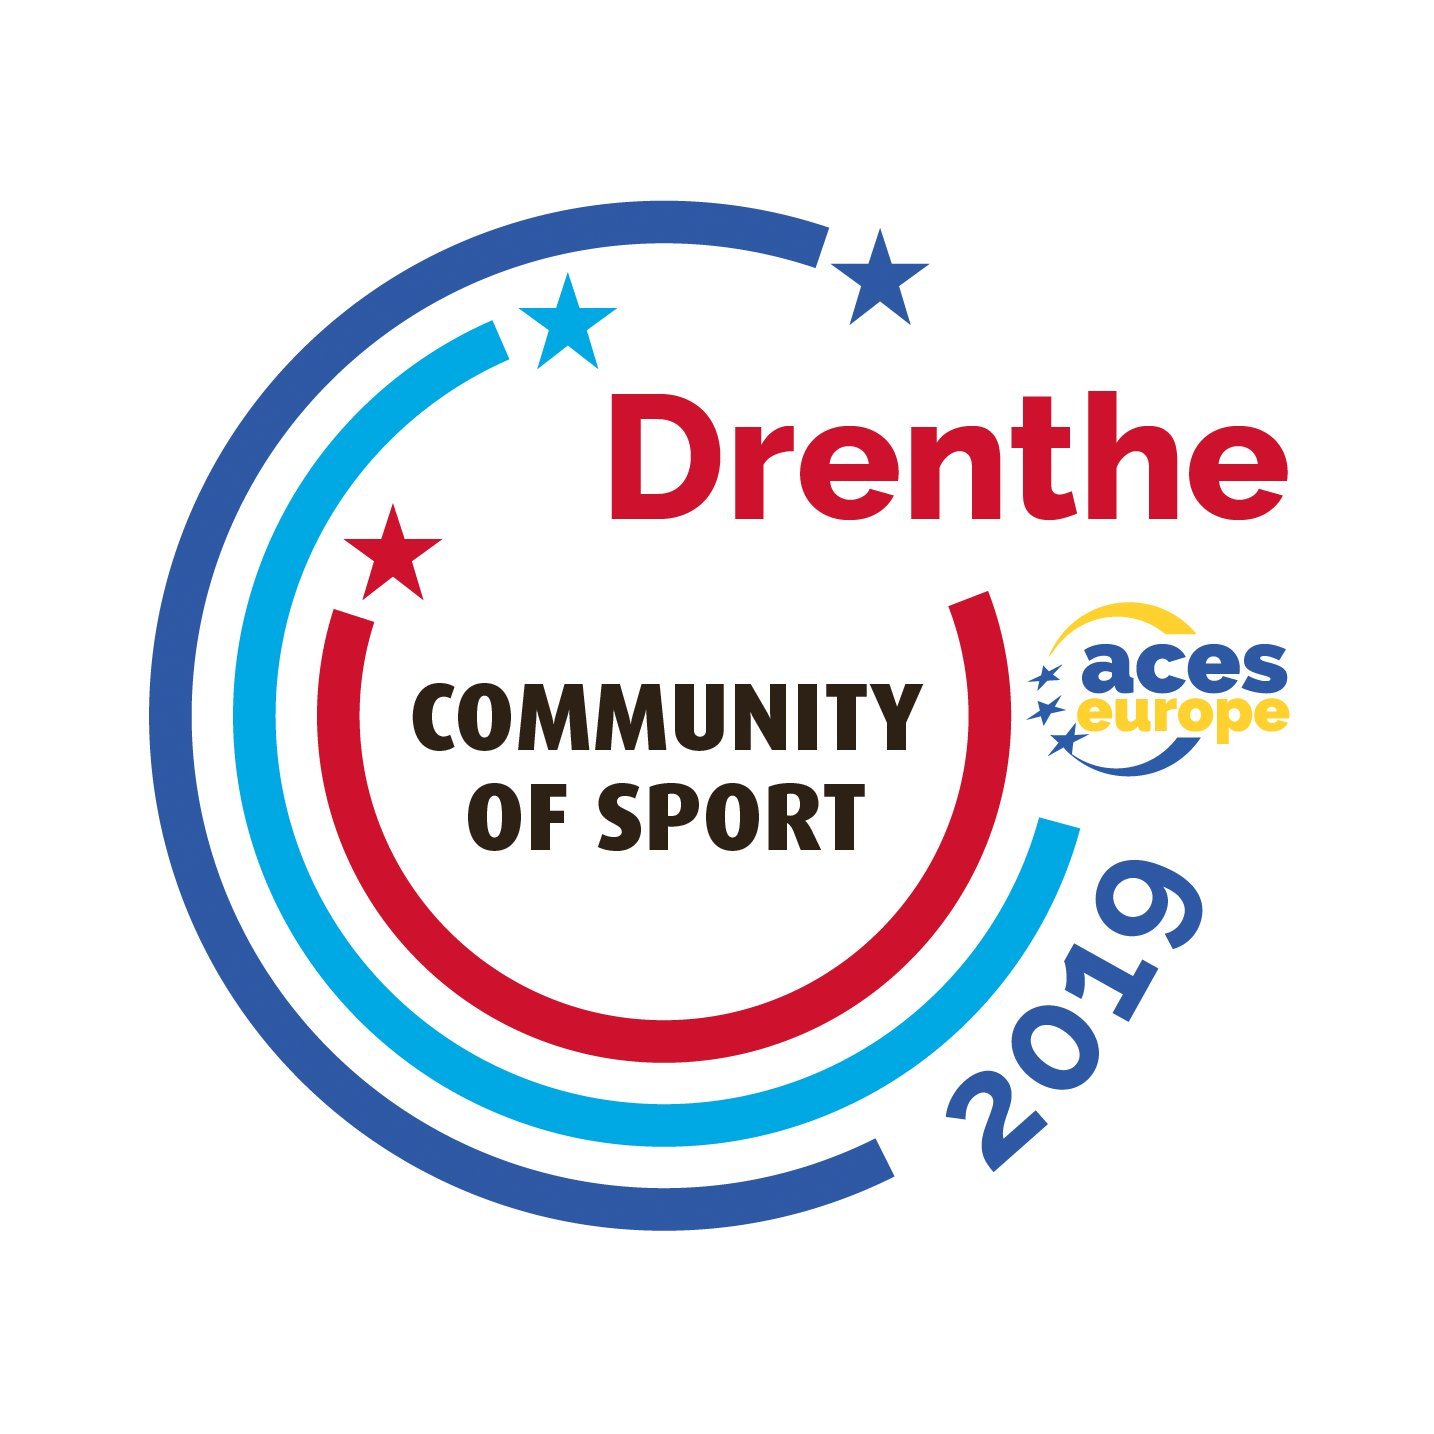 Volg alle activiteiten op het gebied van sport en bewegen in de provincie Drenthe. Deel jouw sportverhaal met #cos2019 #communityofsport2019